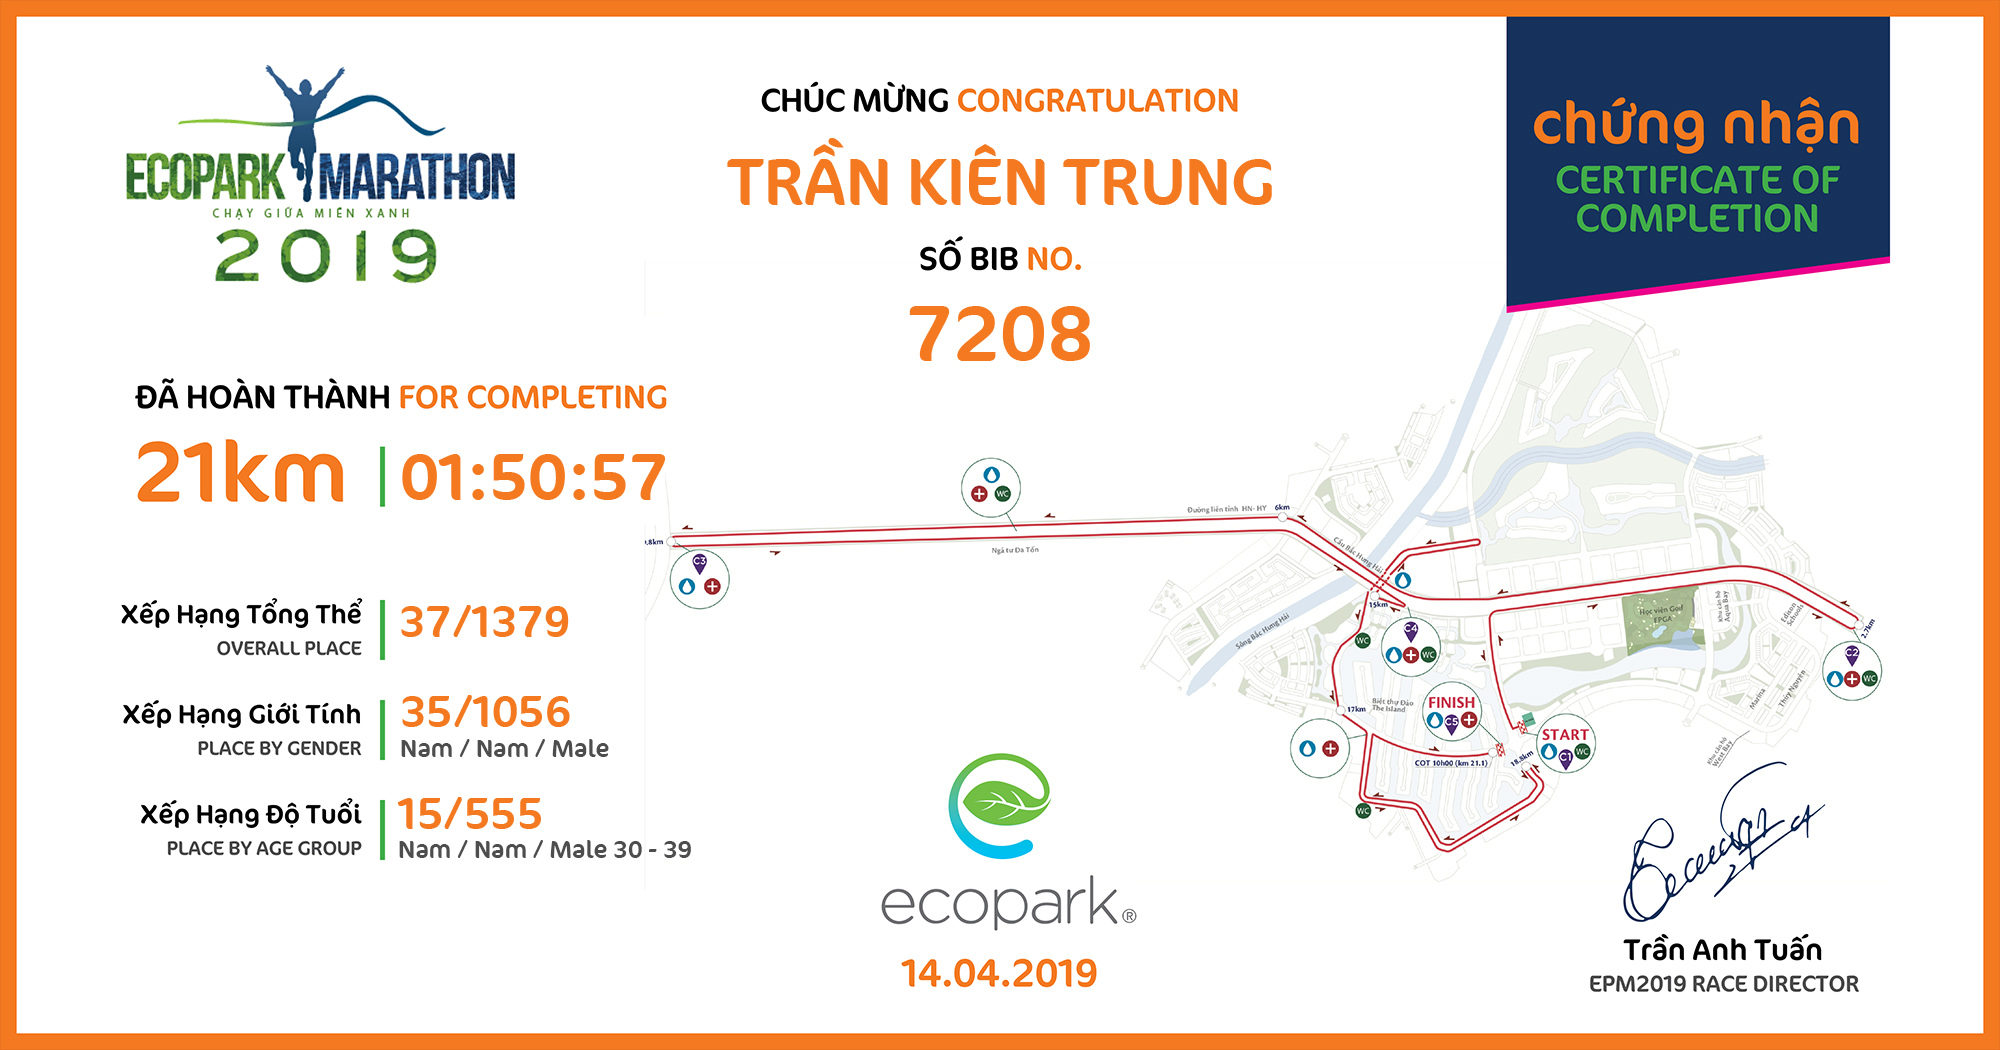 7208 - Trần Kiên Trung